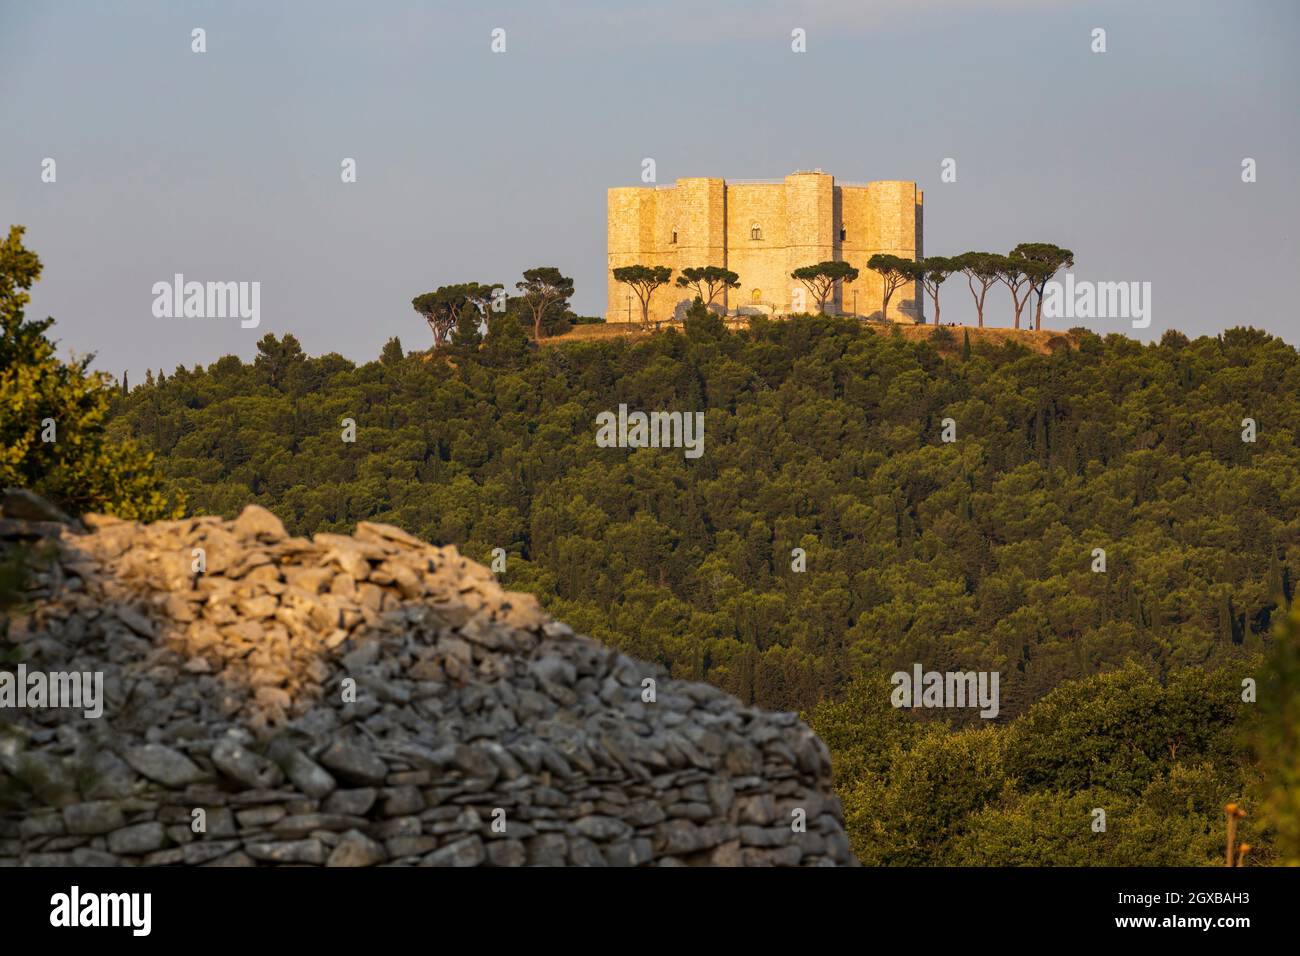 Castillo del Monte, castillo construido en forma octogonal por el Santo emperador romano Federico II en el siglo 13 en la región de Apulia, Italia. Foto de stock